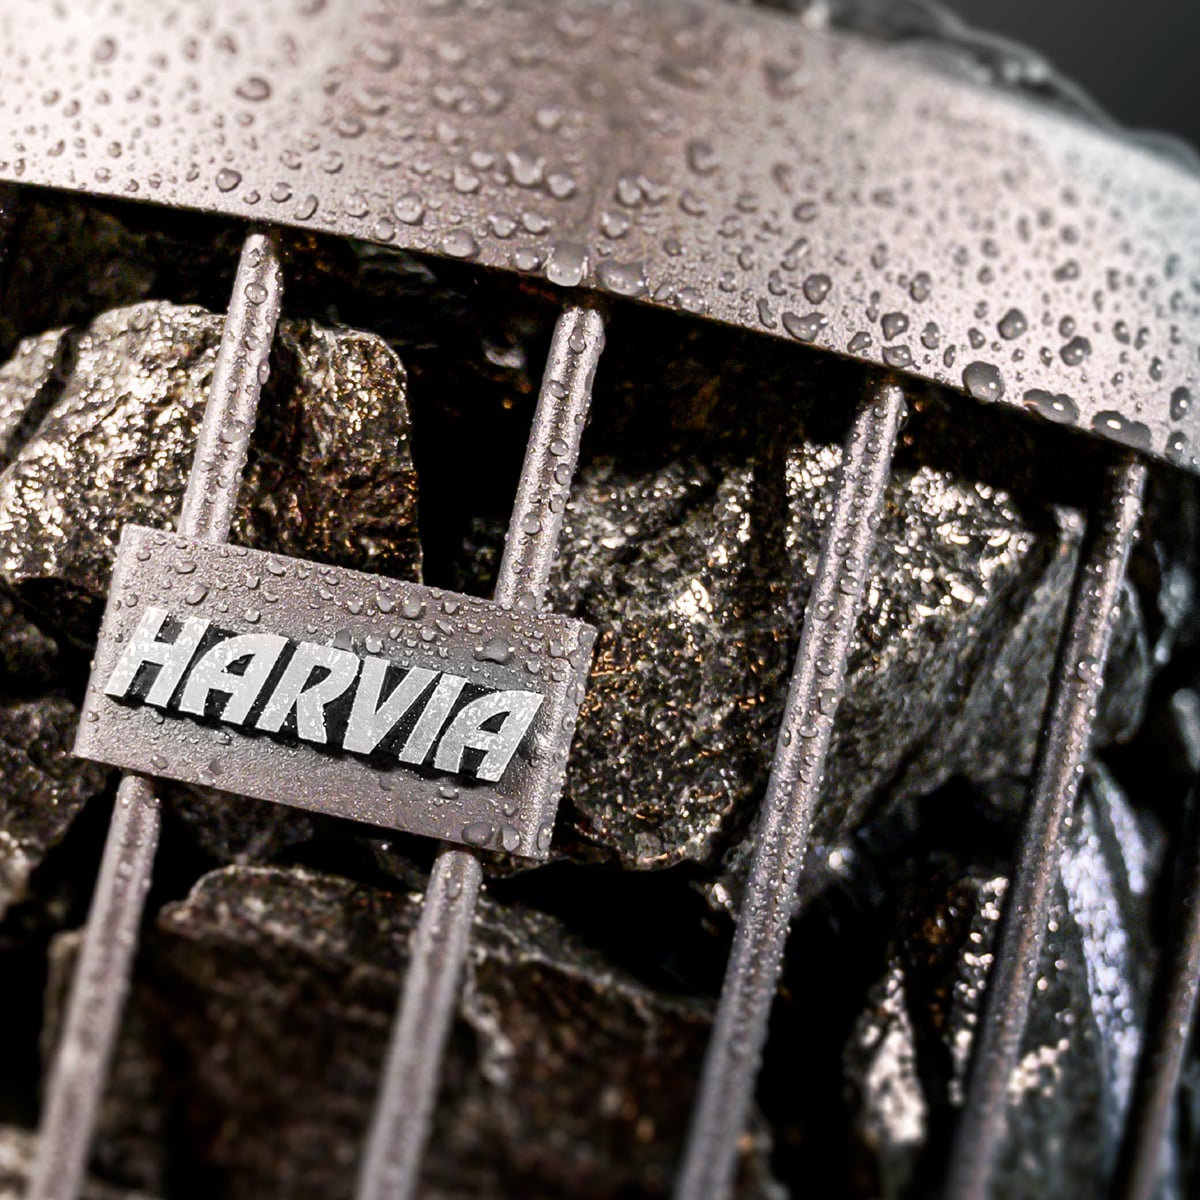 Harvia Legend Home E | Sauna Elektroofen Komplettset inkl. 100 kg original wellmia® Saunasteine 5-10 cm und Steuerung Harvia Xenio CX110 | 10,8 kW